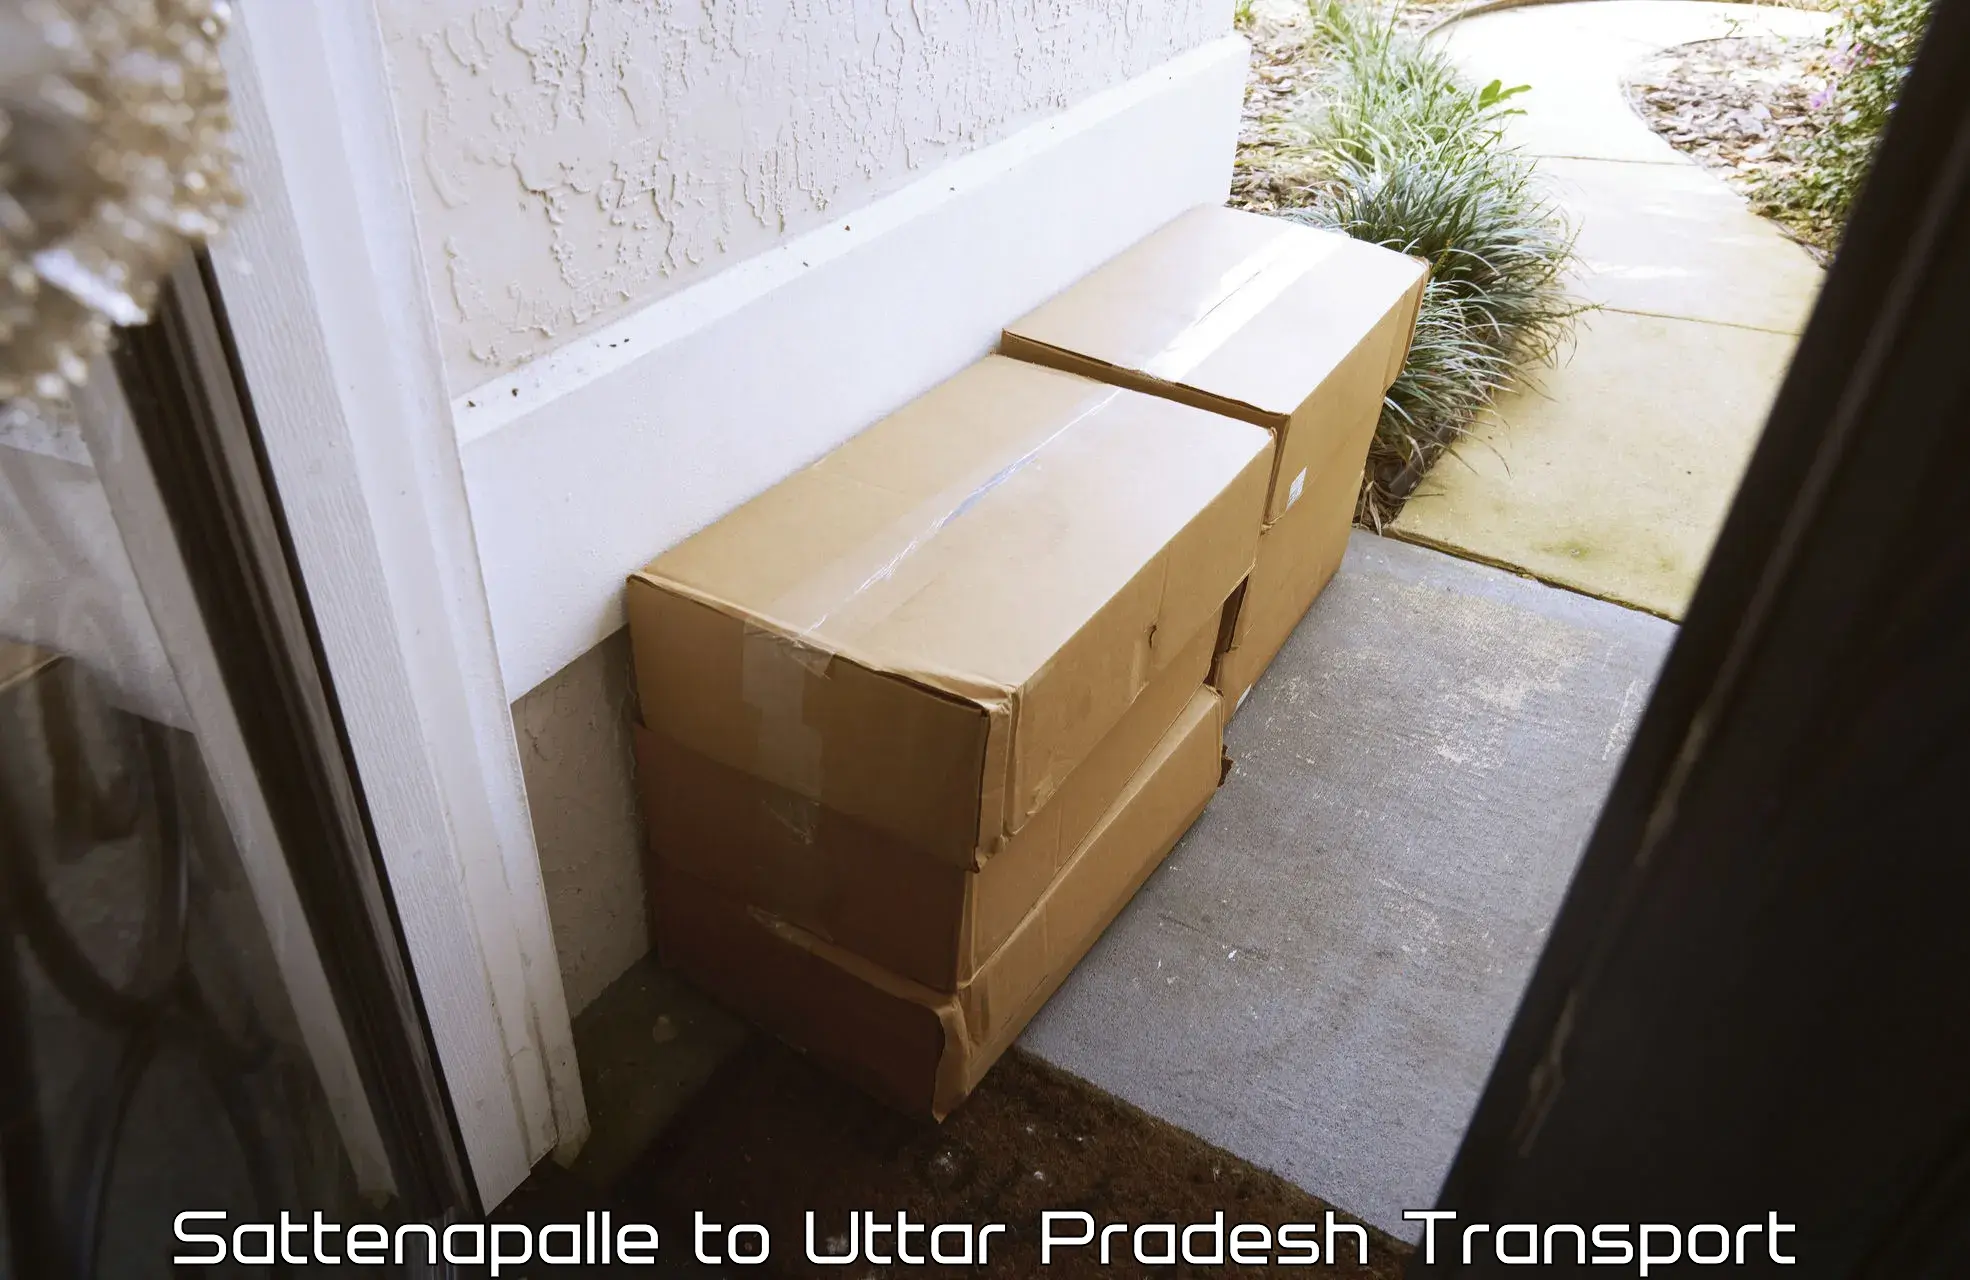 Furniture transport service Sattenapalle to Uttar Pradesh